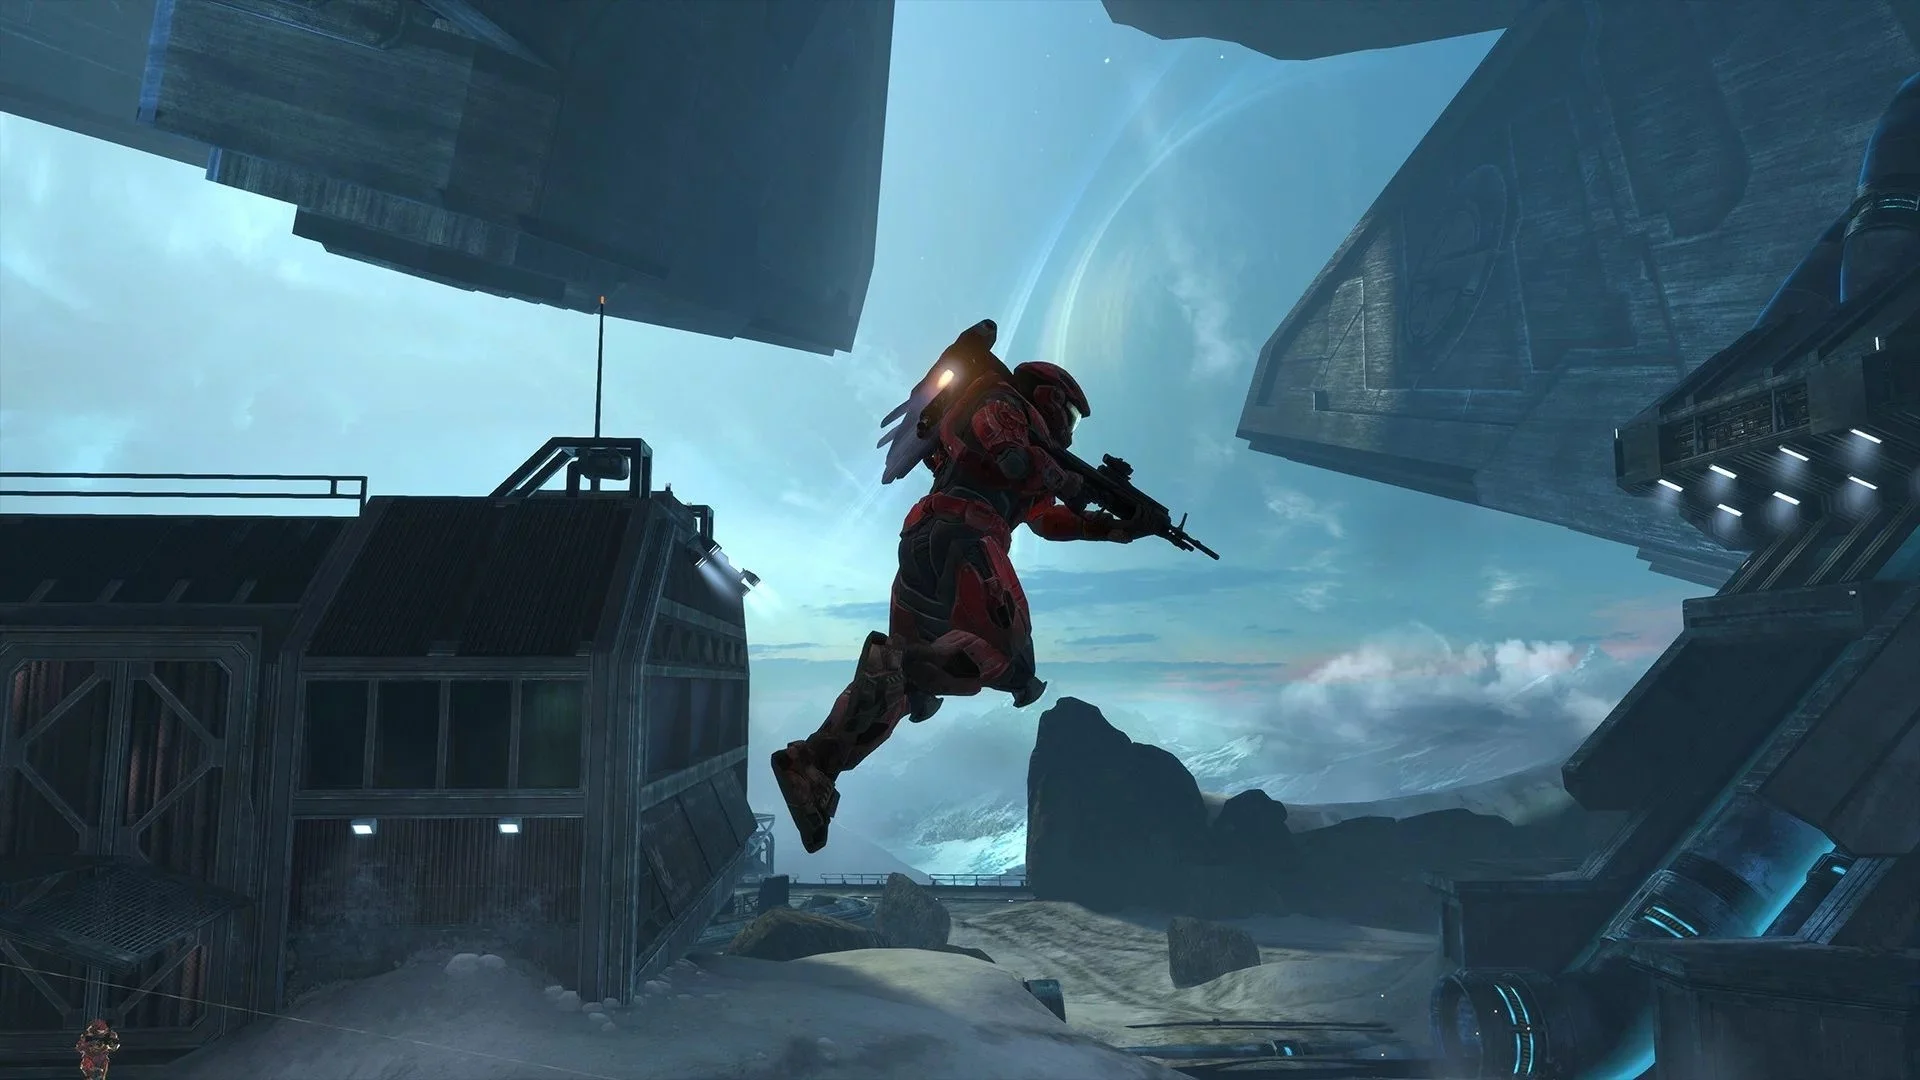 Halo: Reach, лучшая часть серии, вышла на PC. Ответы на главные вопросы - фото 7